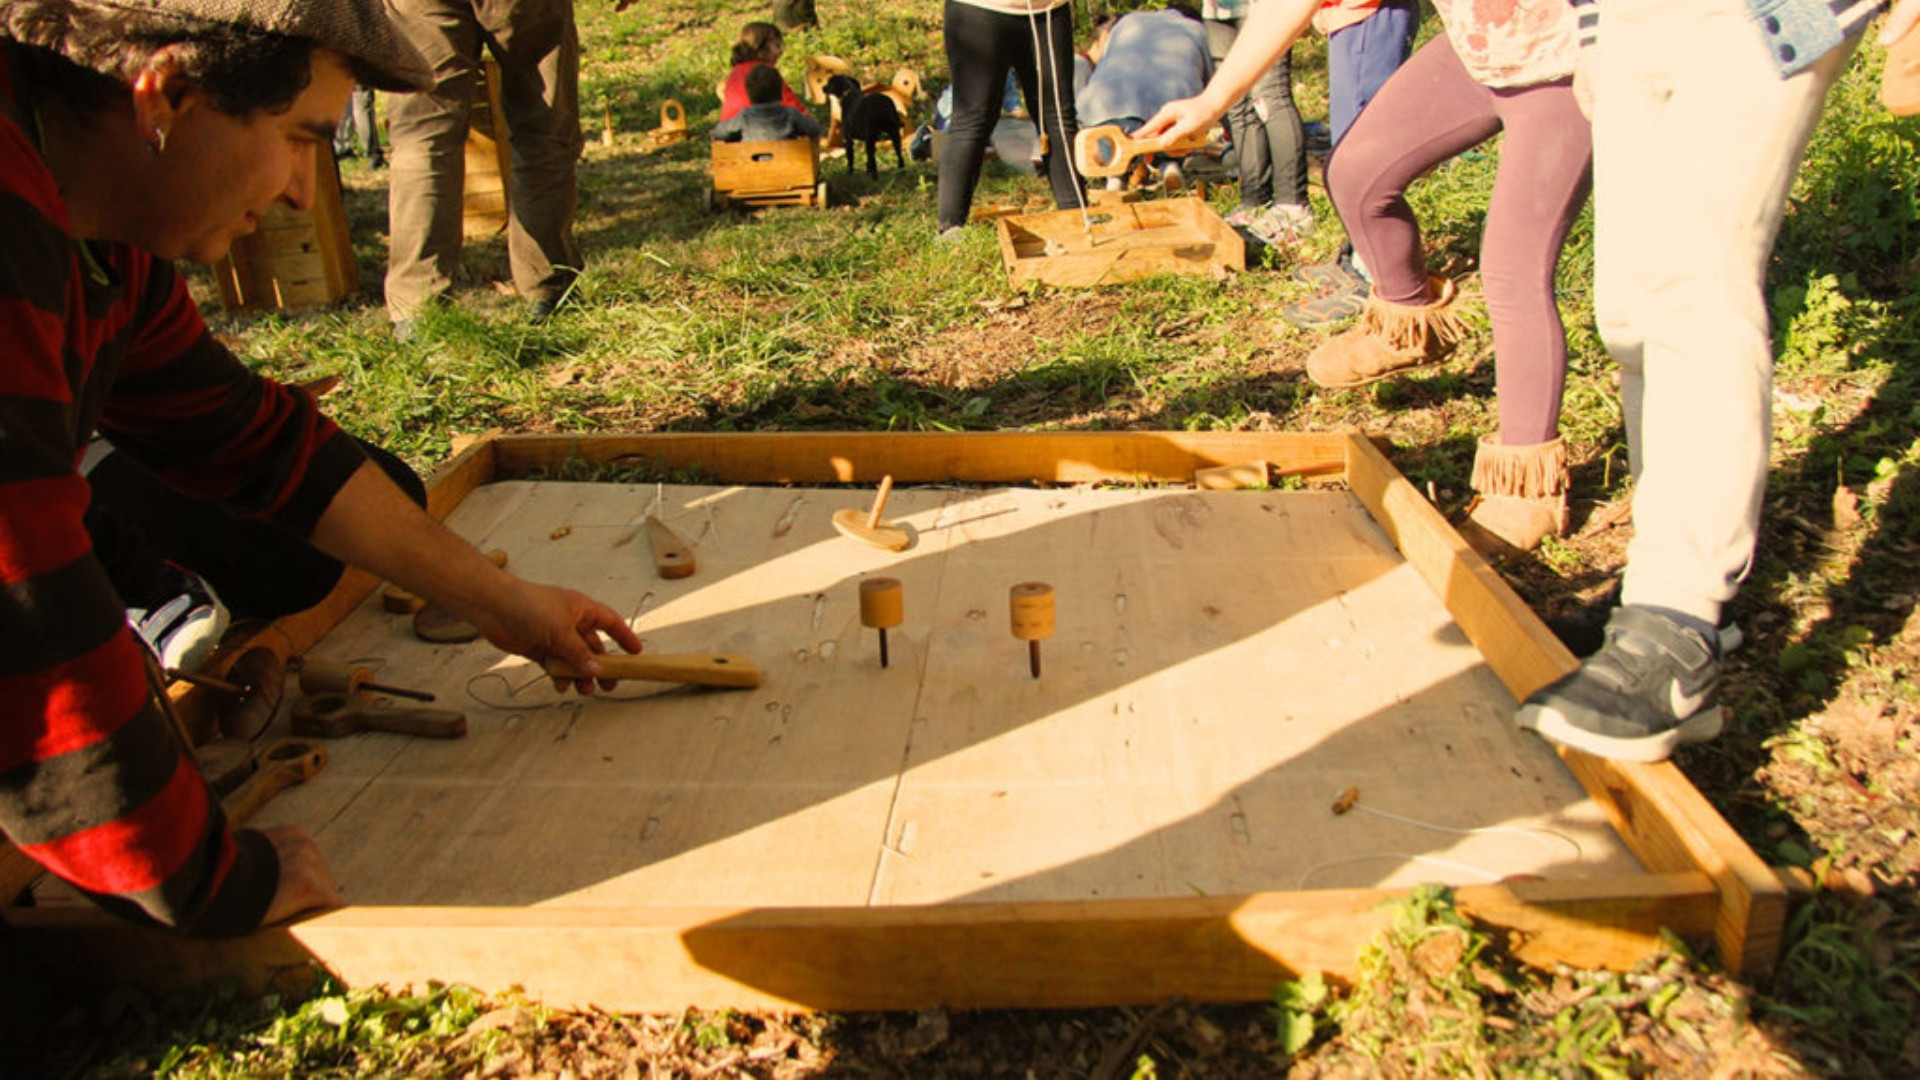 César juega con los niños a un juego tradicional fabricado en madera